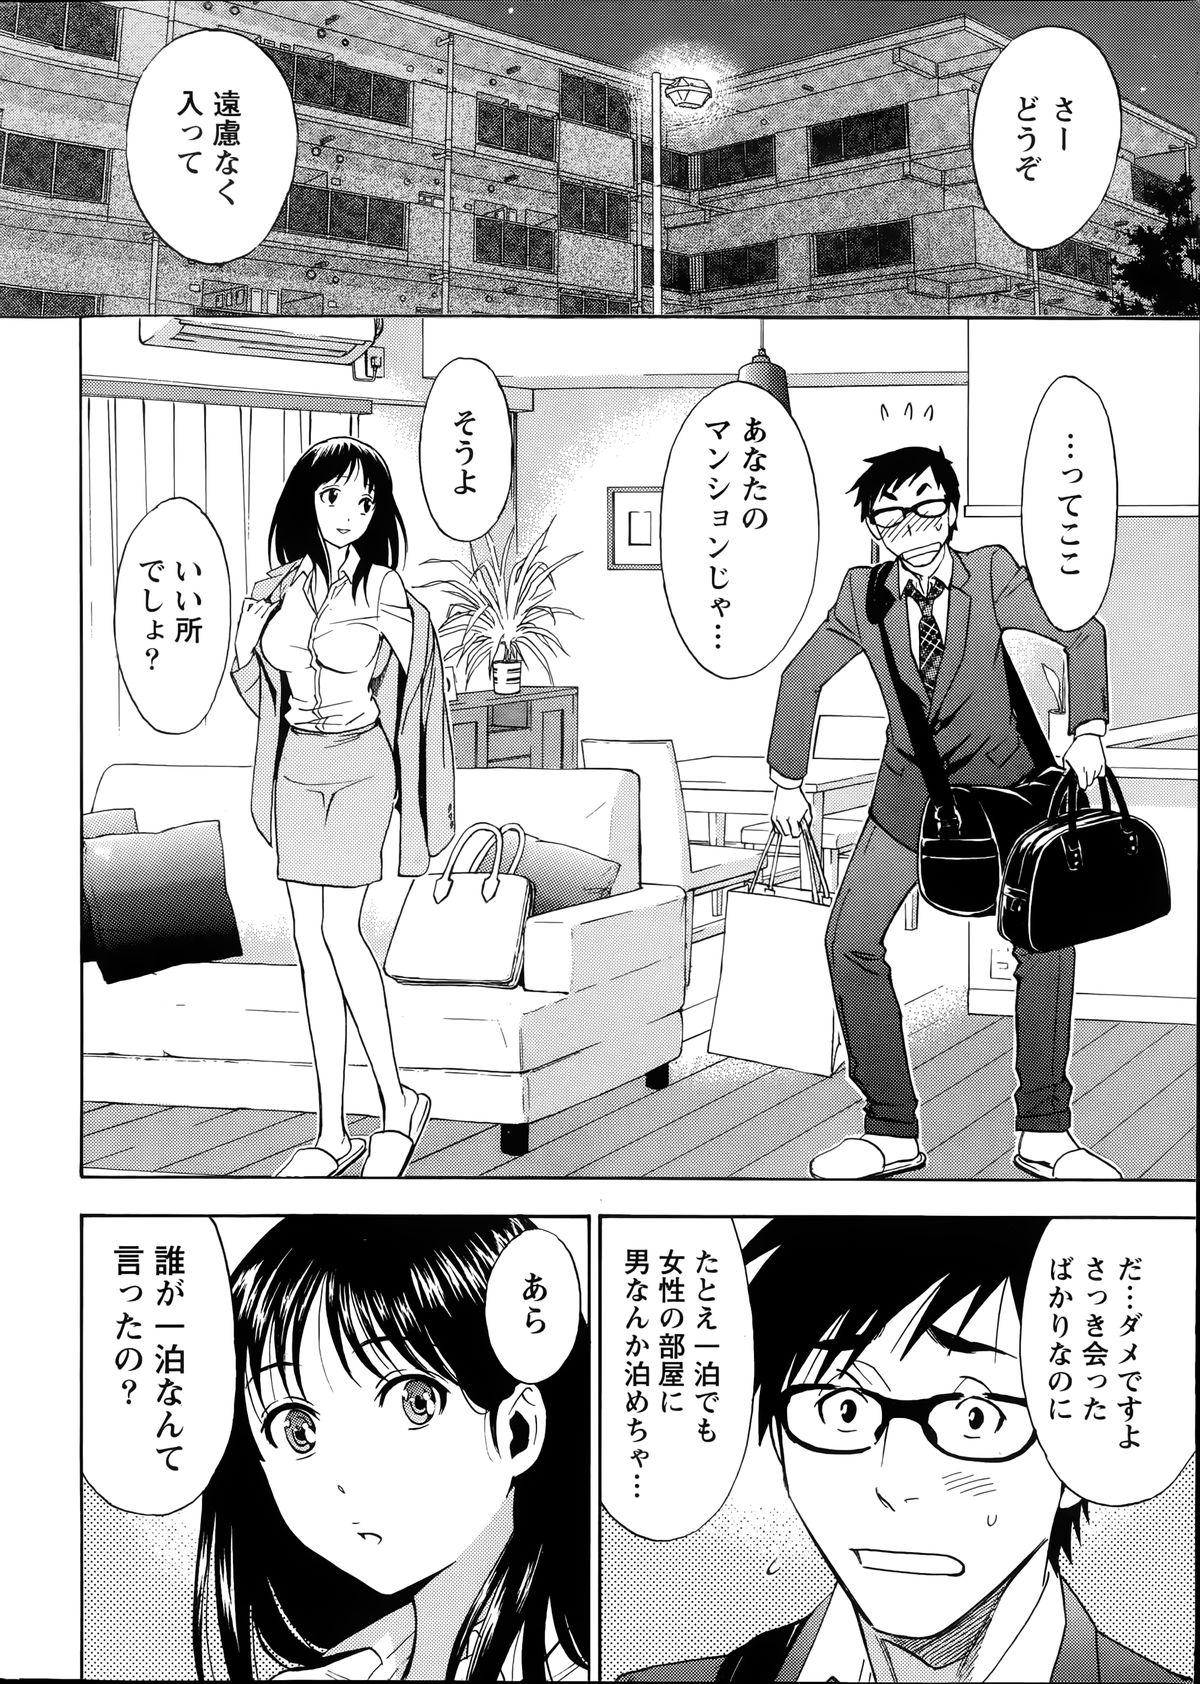 [Sawada Furope] Nise kon! - Spectacular Happy Sham Marriage! Ch.1-6 11